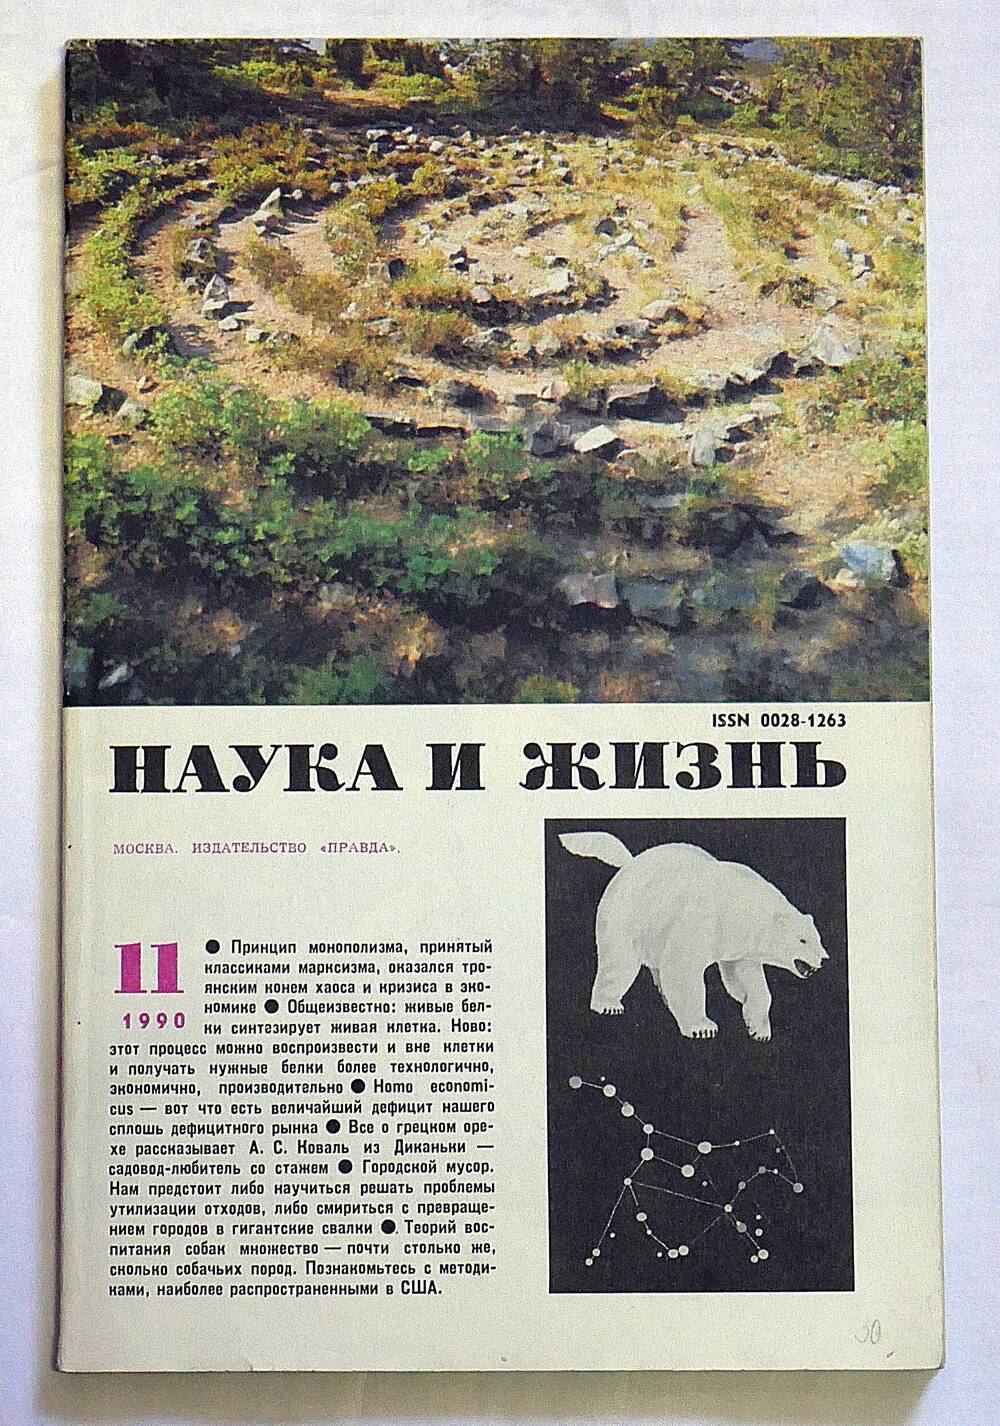 Журнал. Наука и жизнь. № 11 ноябрь 1990 г.